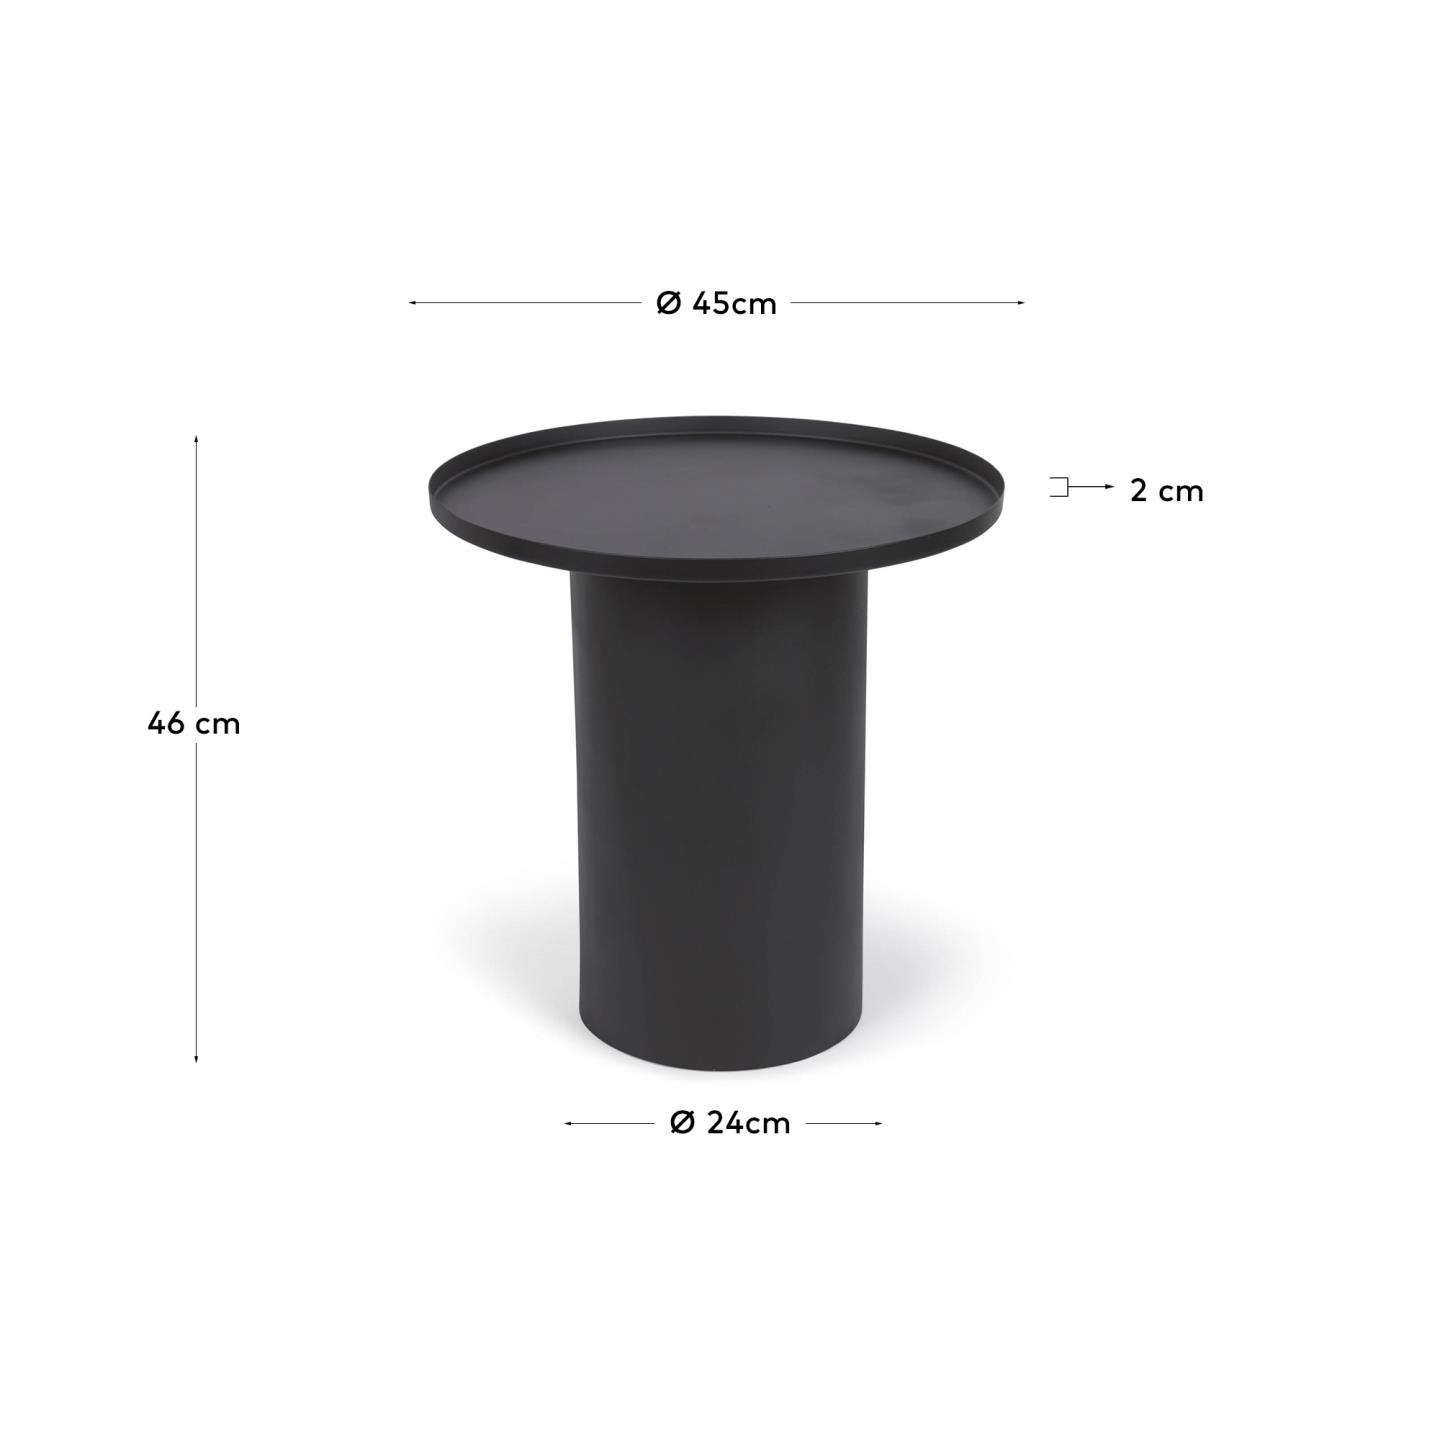 플레스카 블랙 메탈 라운드 사이드테이블 Ø 45cm - 크기